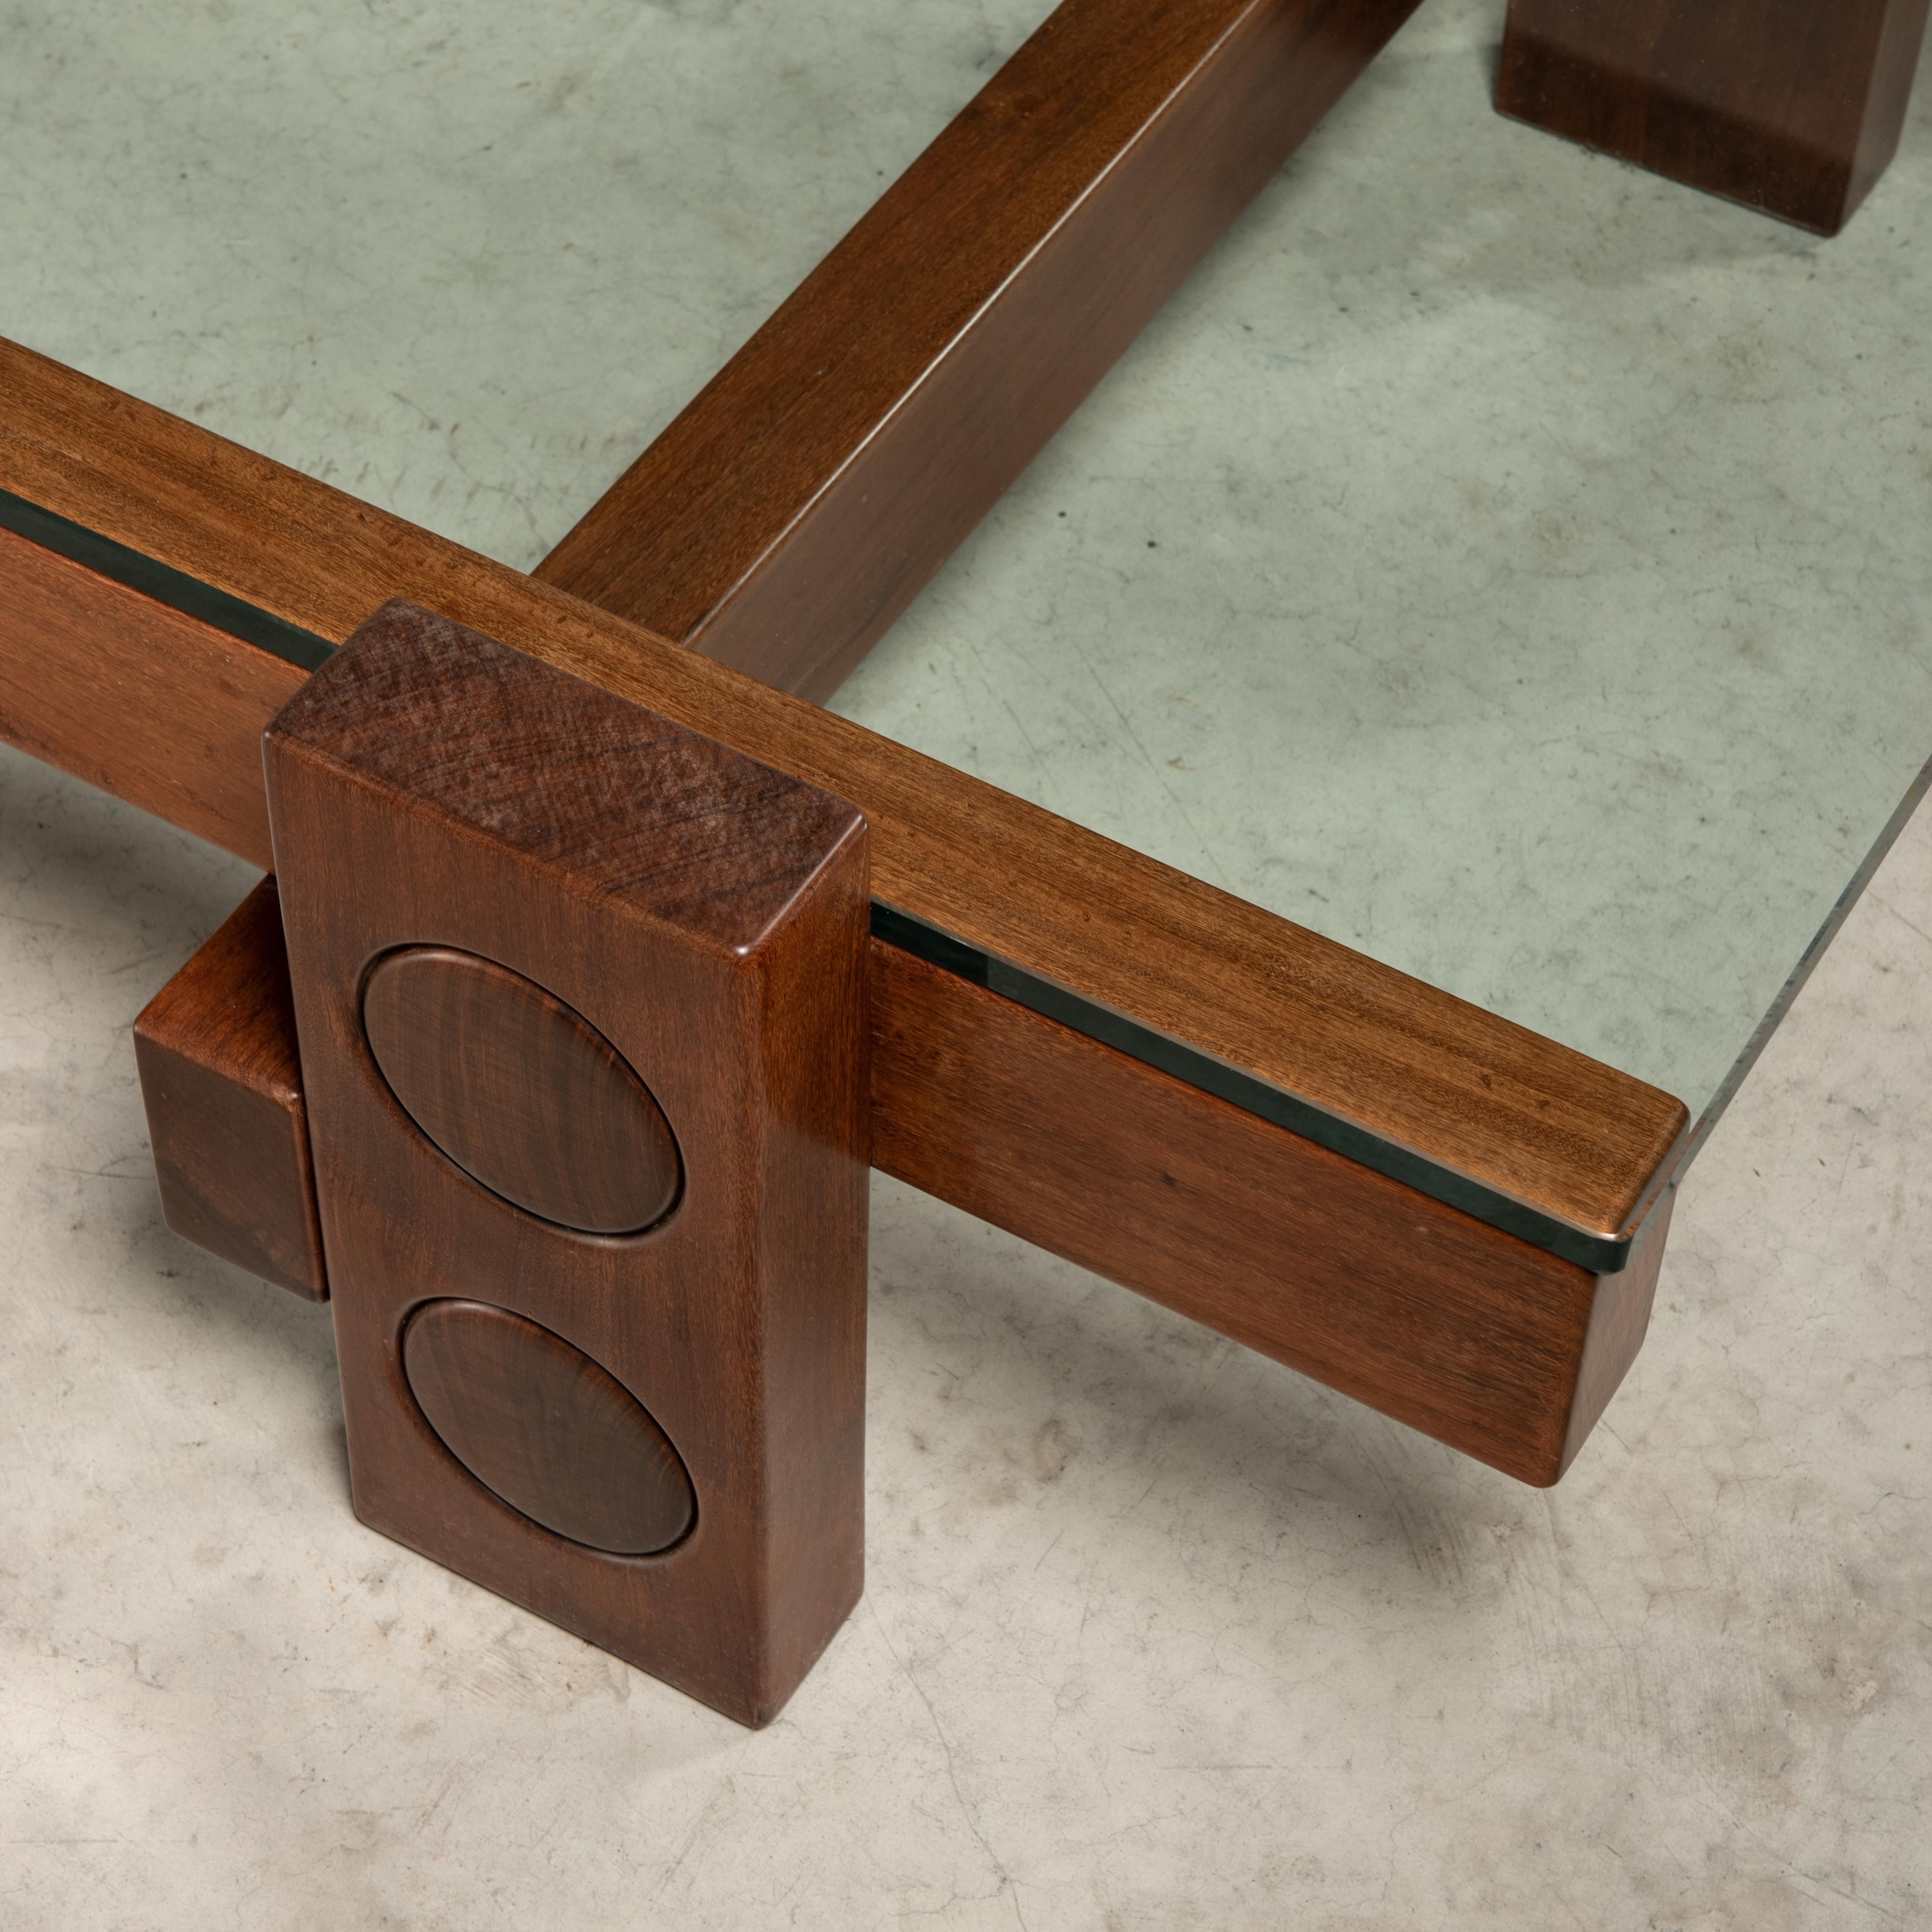 Glass 'PC' Center Table in Solid Wood, Zanini de Zanine, Brazilian Contemporary Design For Sale